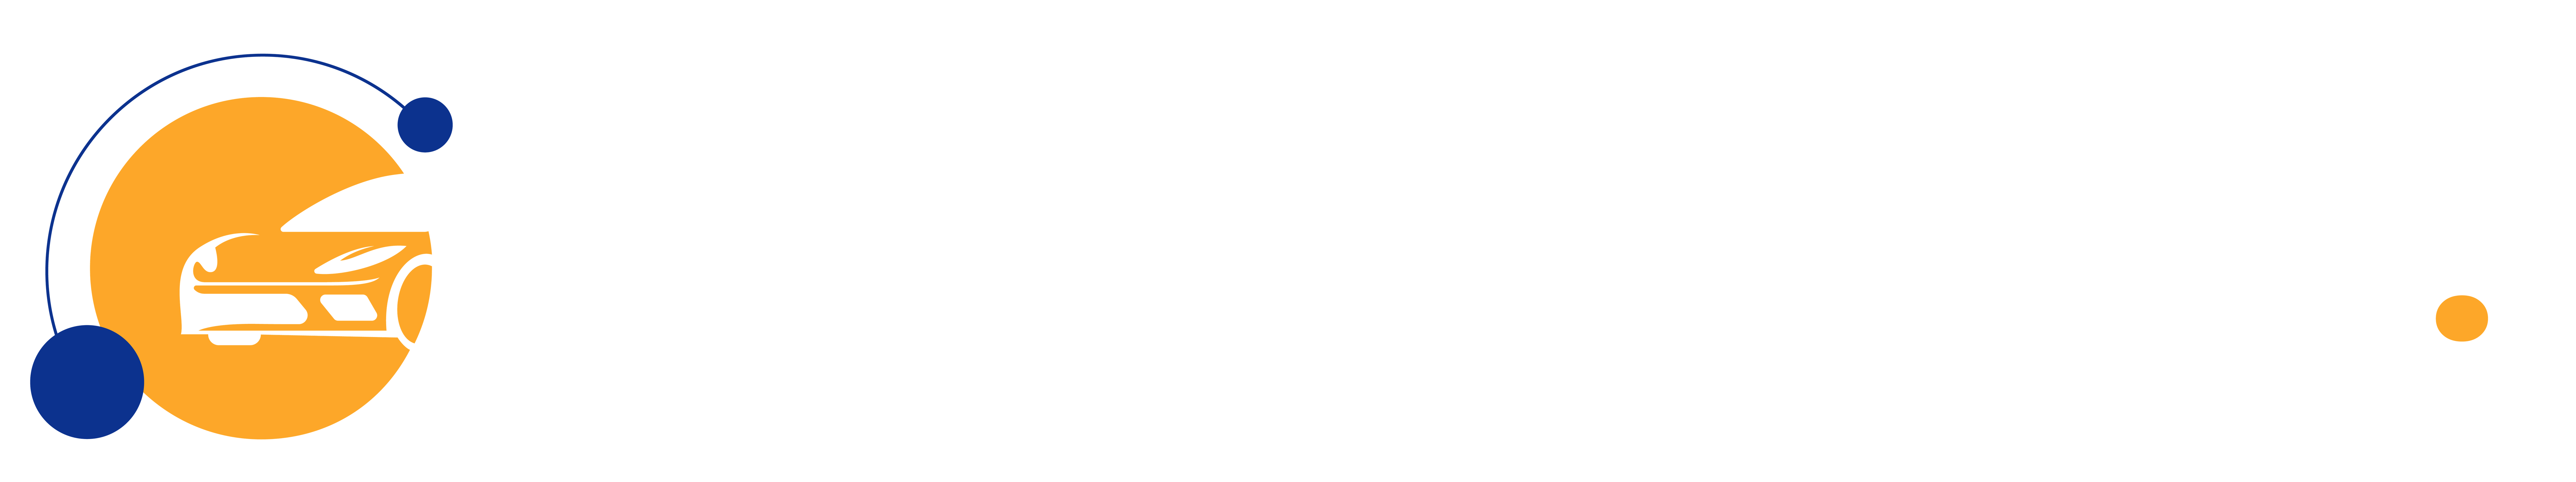 Cars Rental Hub - logo